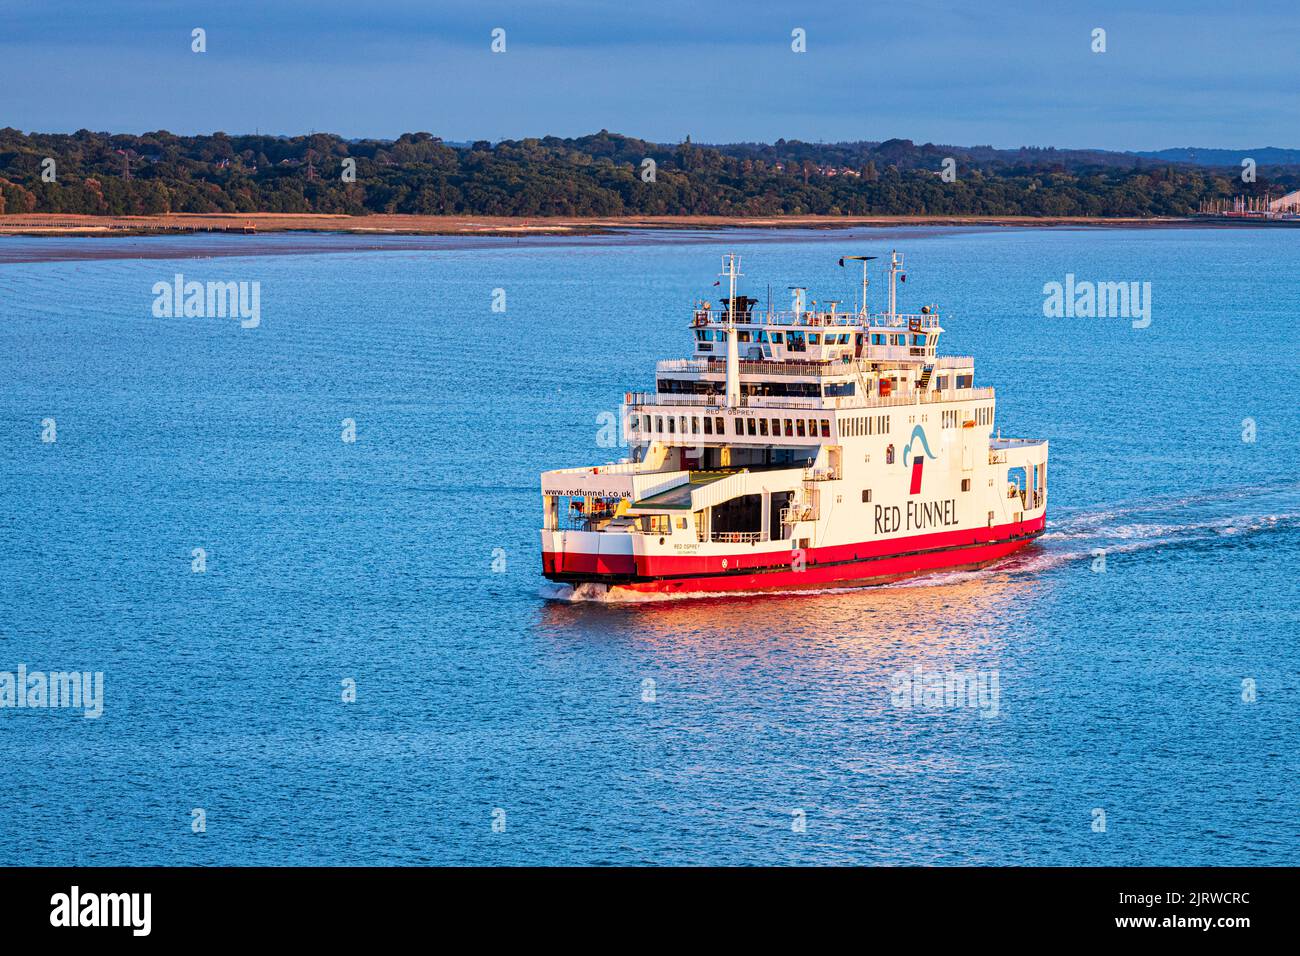 El MV Red Osprey vehículo y ferry de pasajeros operado por Red Funnel en Southampton Water al amanecer de Fawley, Hampshire Reino Unido rumbo a la isla de Wight Foto de stock